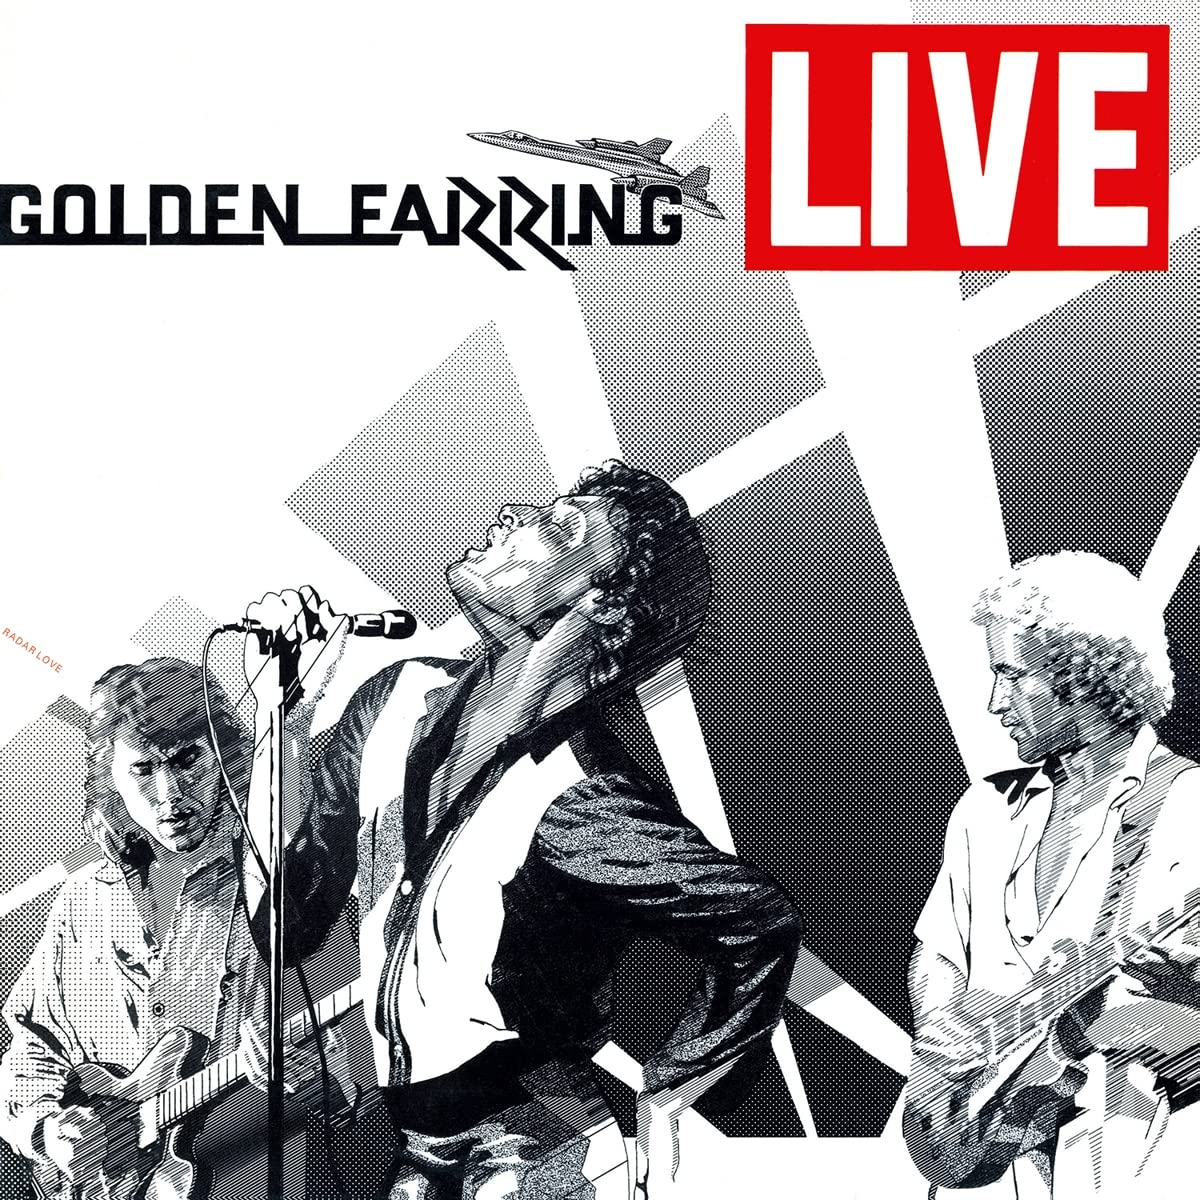 Vinile Golden Earring - Live -Coloured/Remaster- (2 Lp) NUOVO SIGILLATO, EDIZIONE DEL 05/05/2022 SUBITO DISPONIBILE